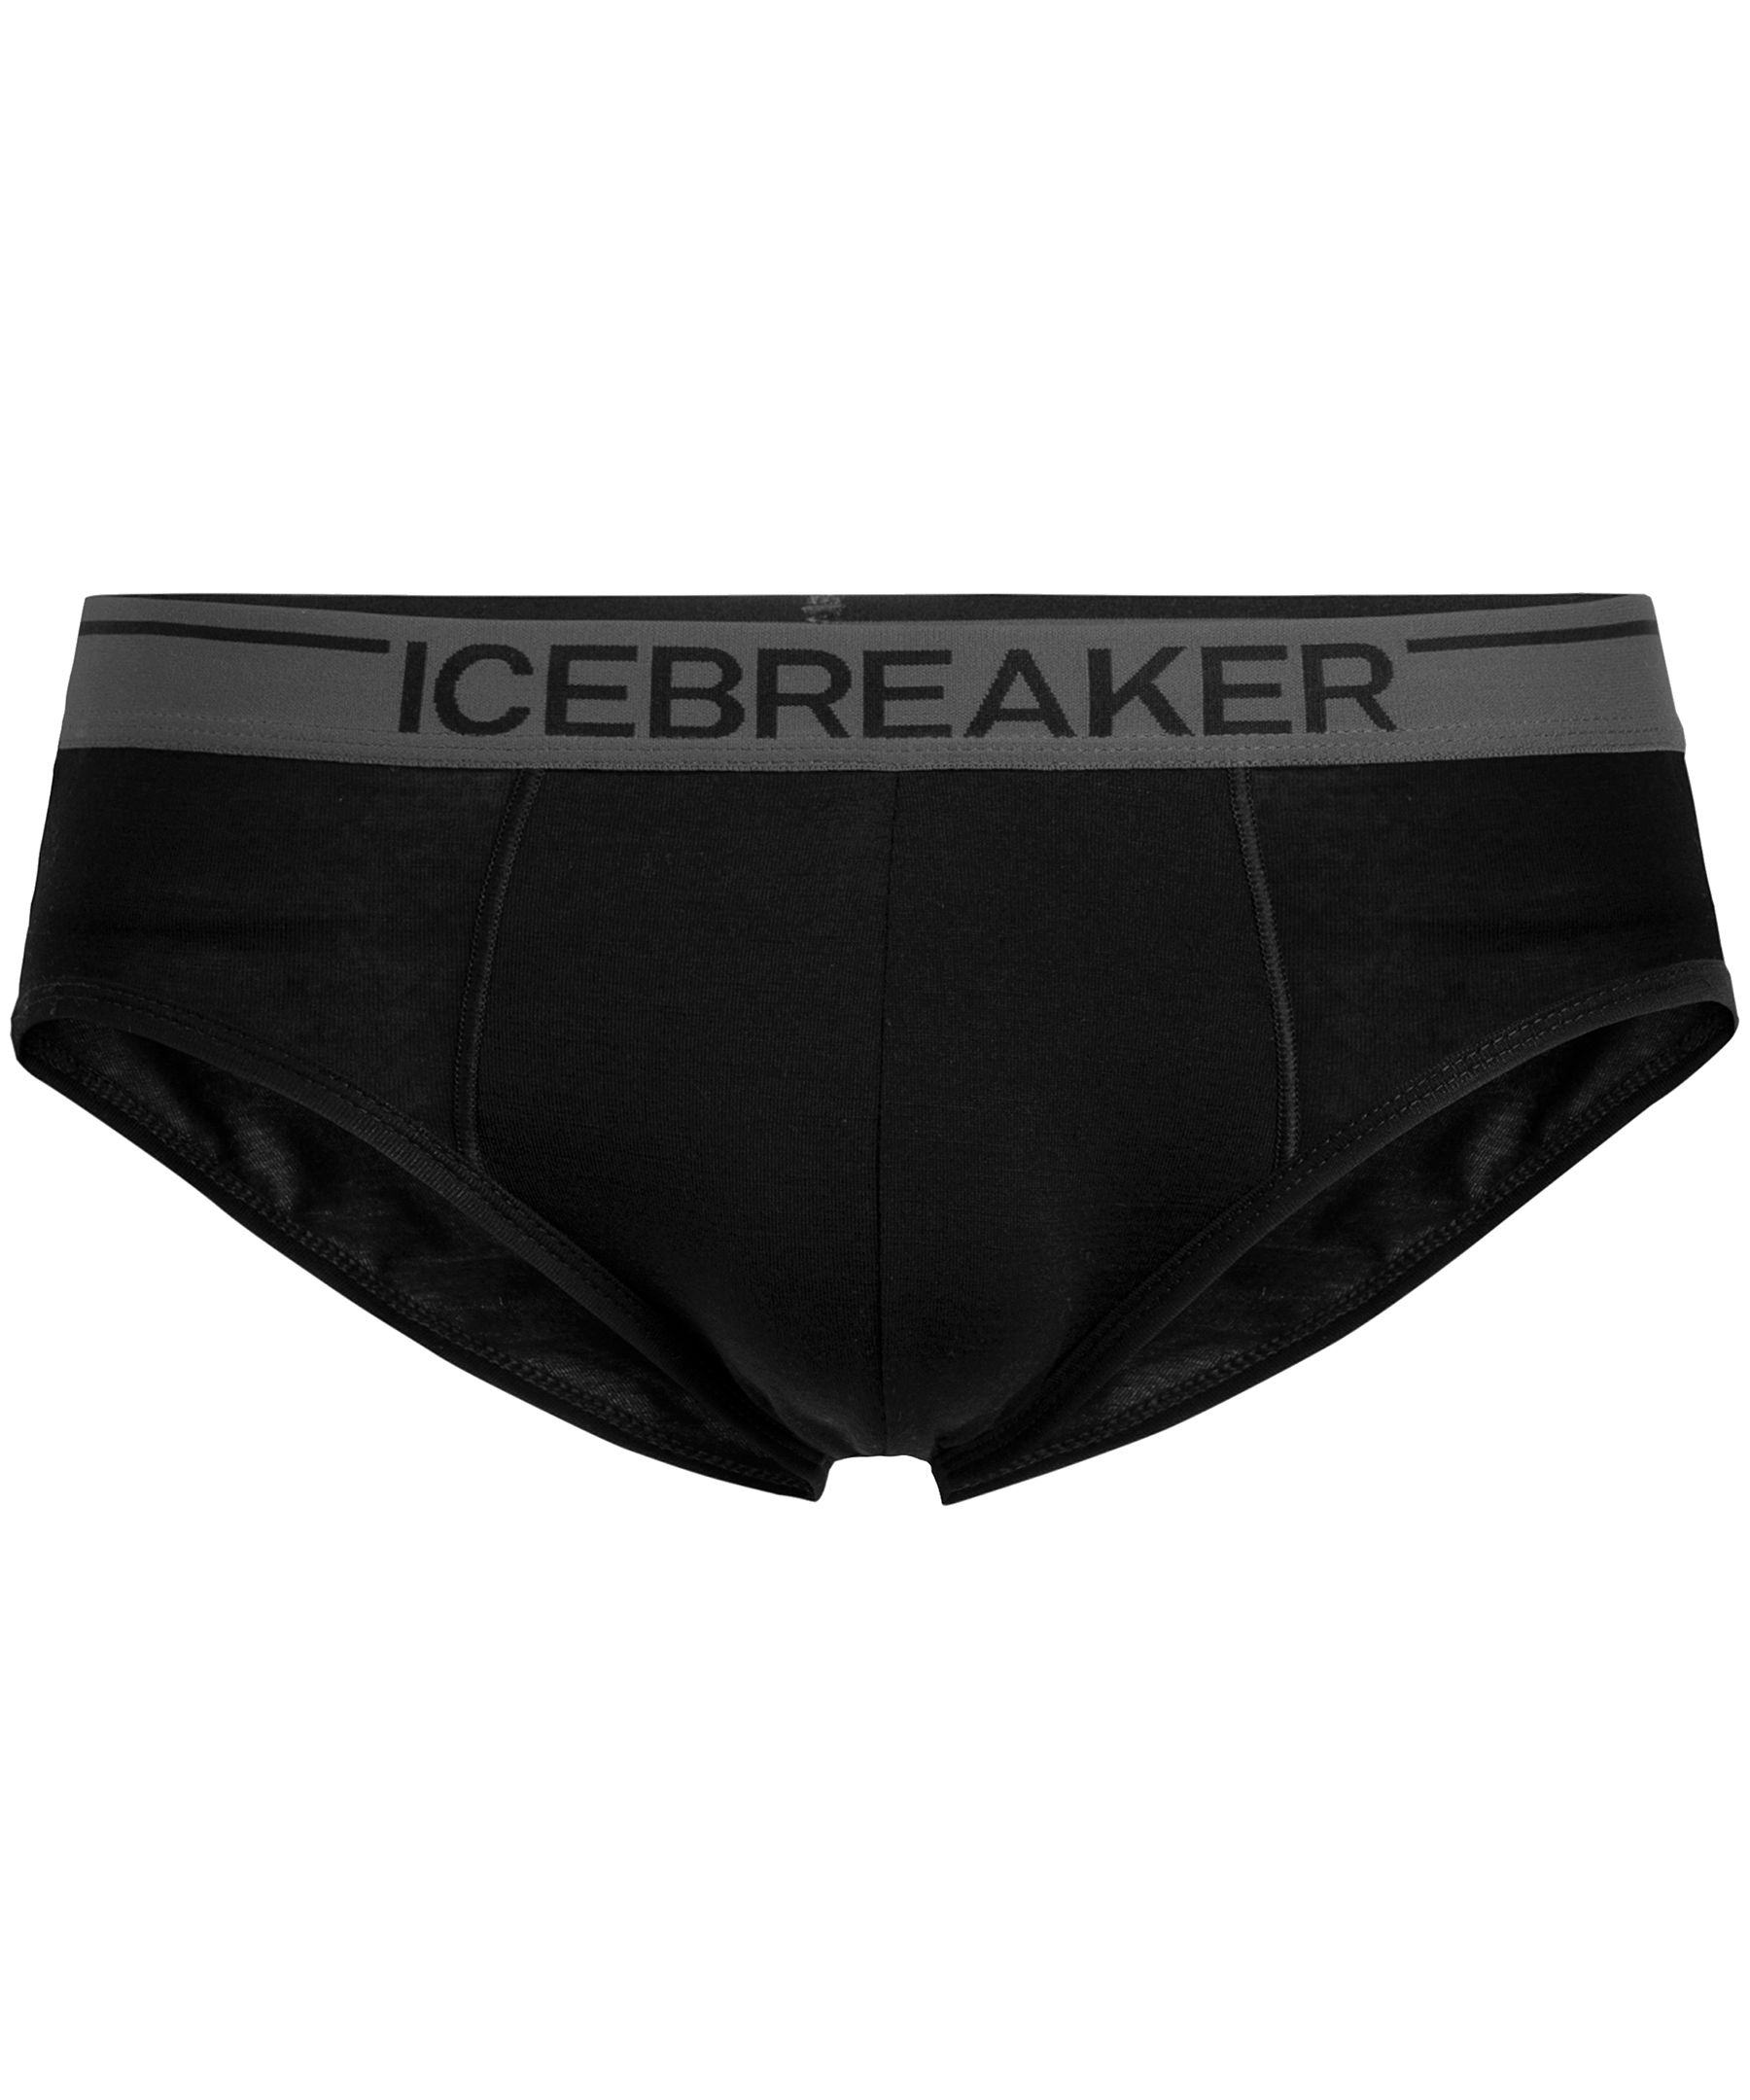 Icebreaker, Intimates & Sleepwear